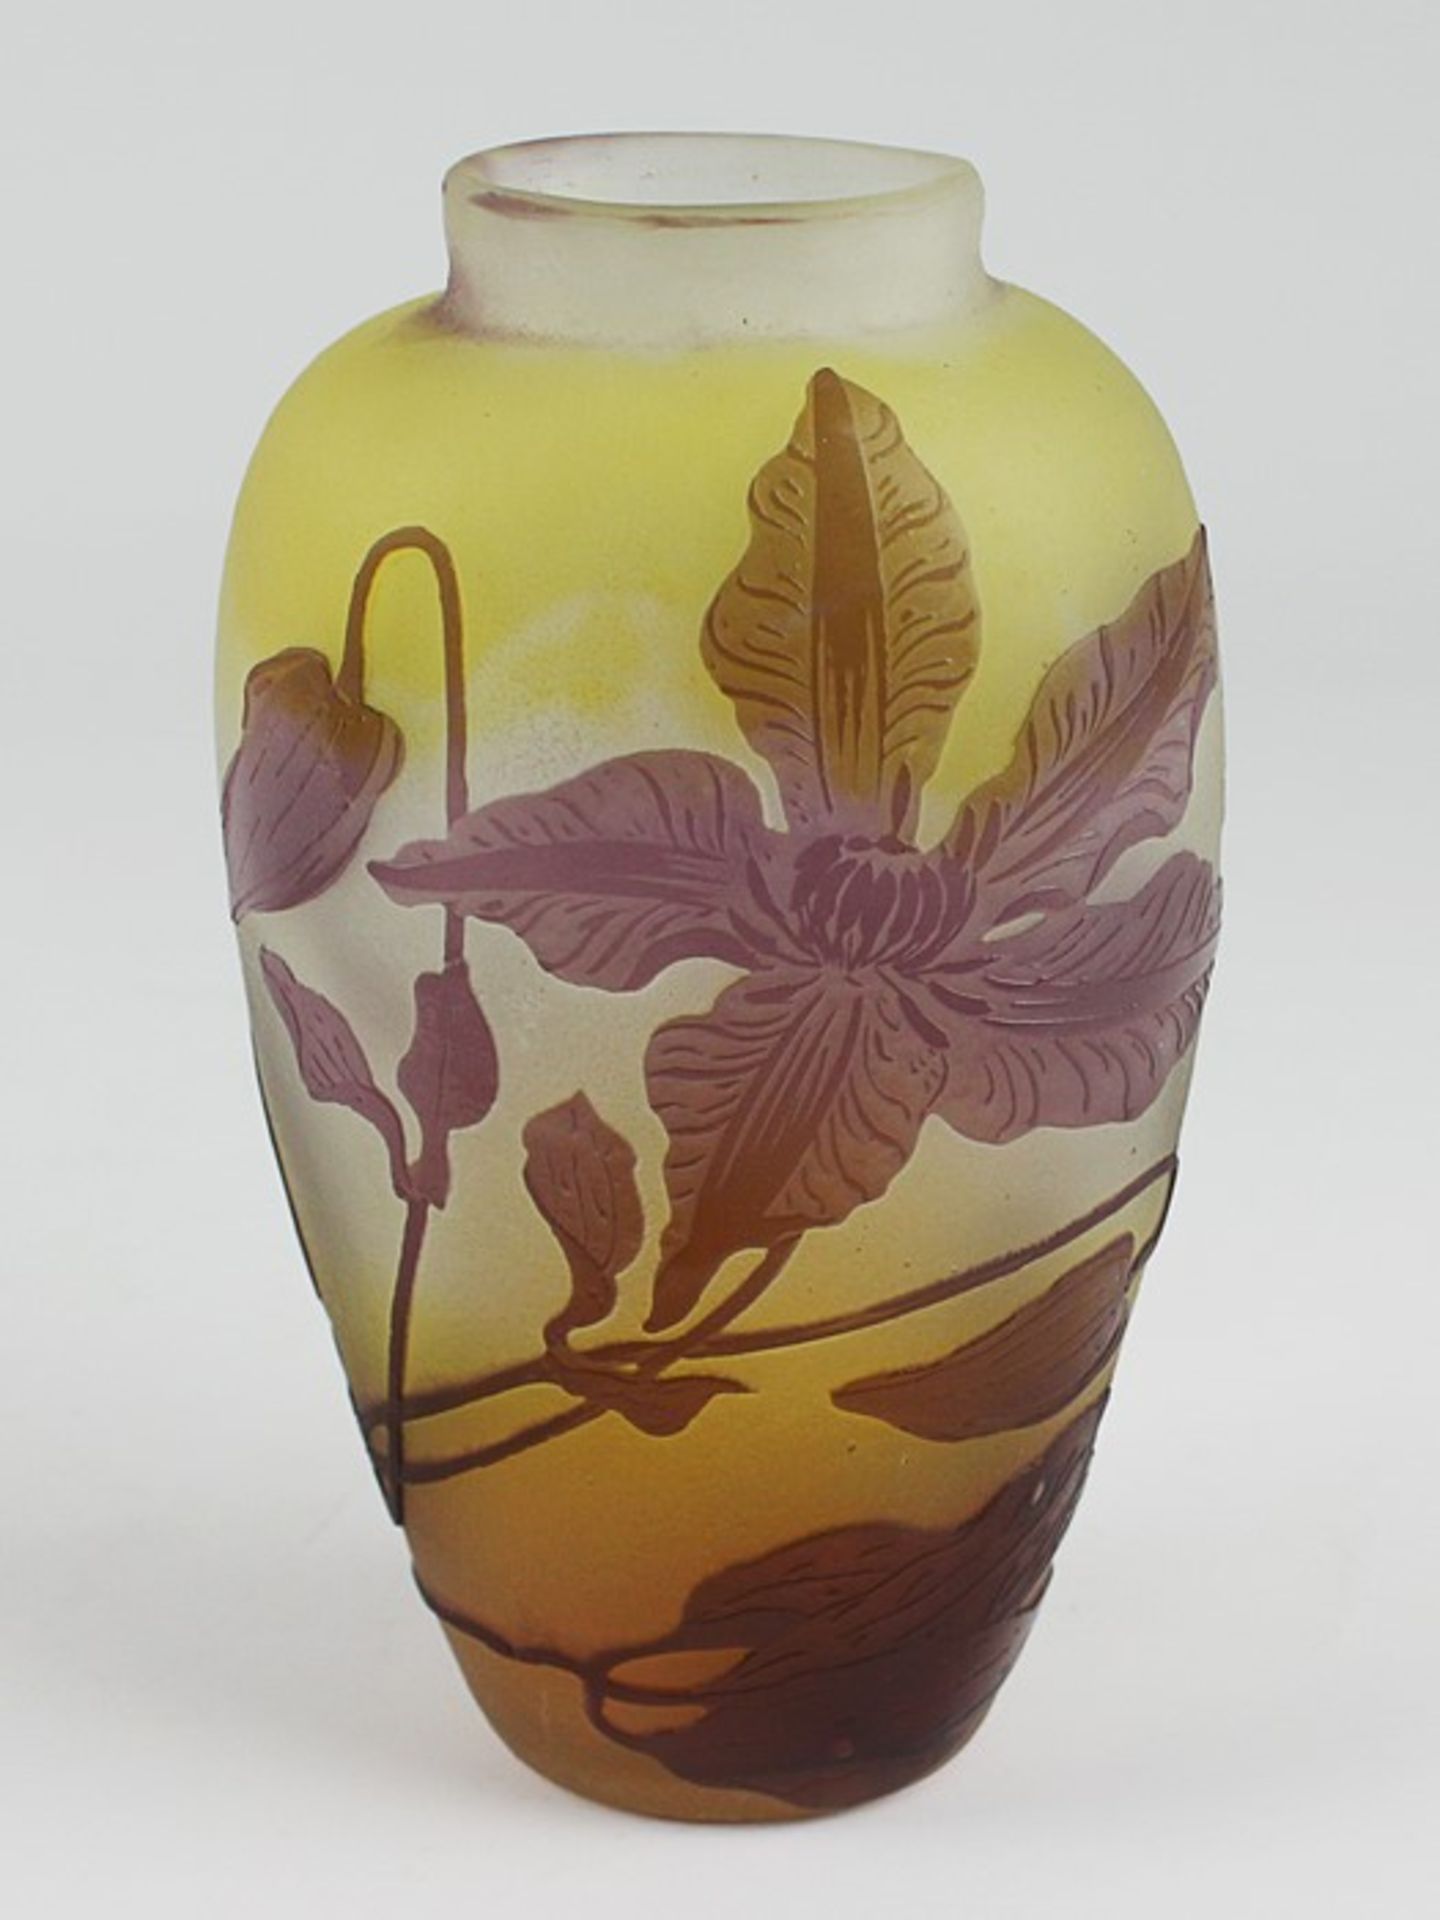 Gallé - Vase1920, Jugendstil, Emile Gallé, Frankreich, farbloses Glas, runder Stand, ovoider, leicht